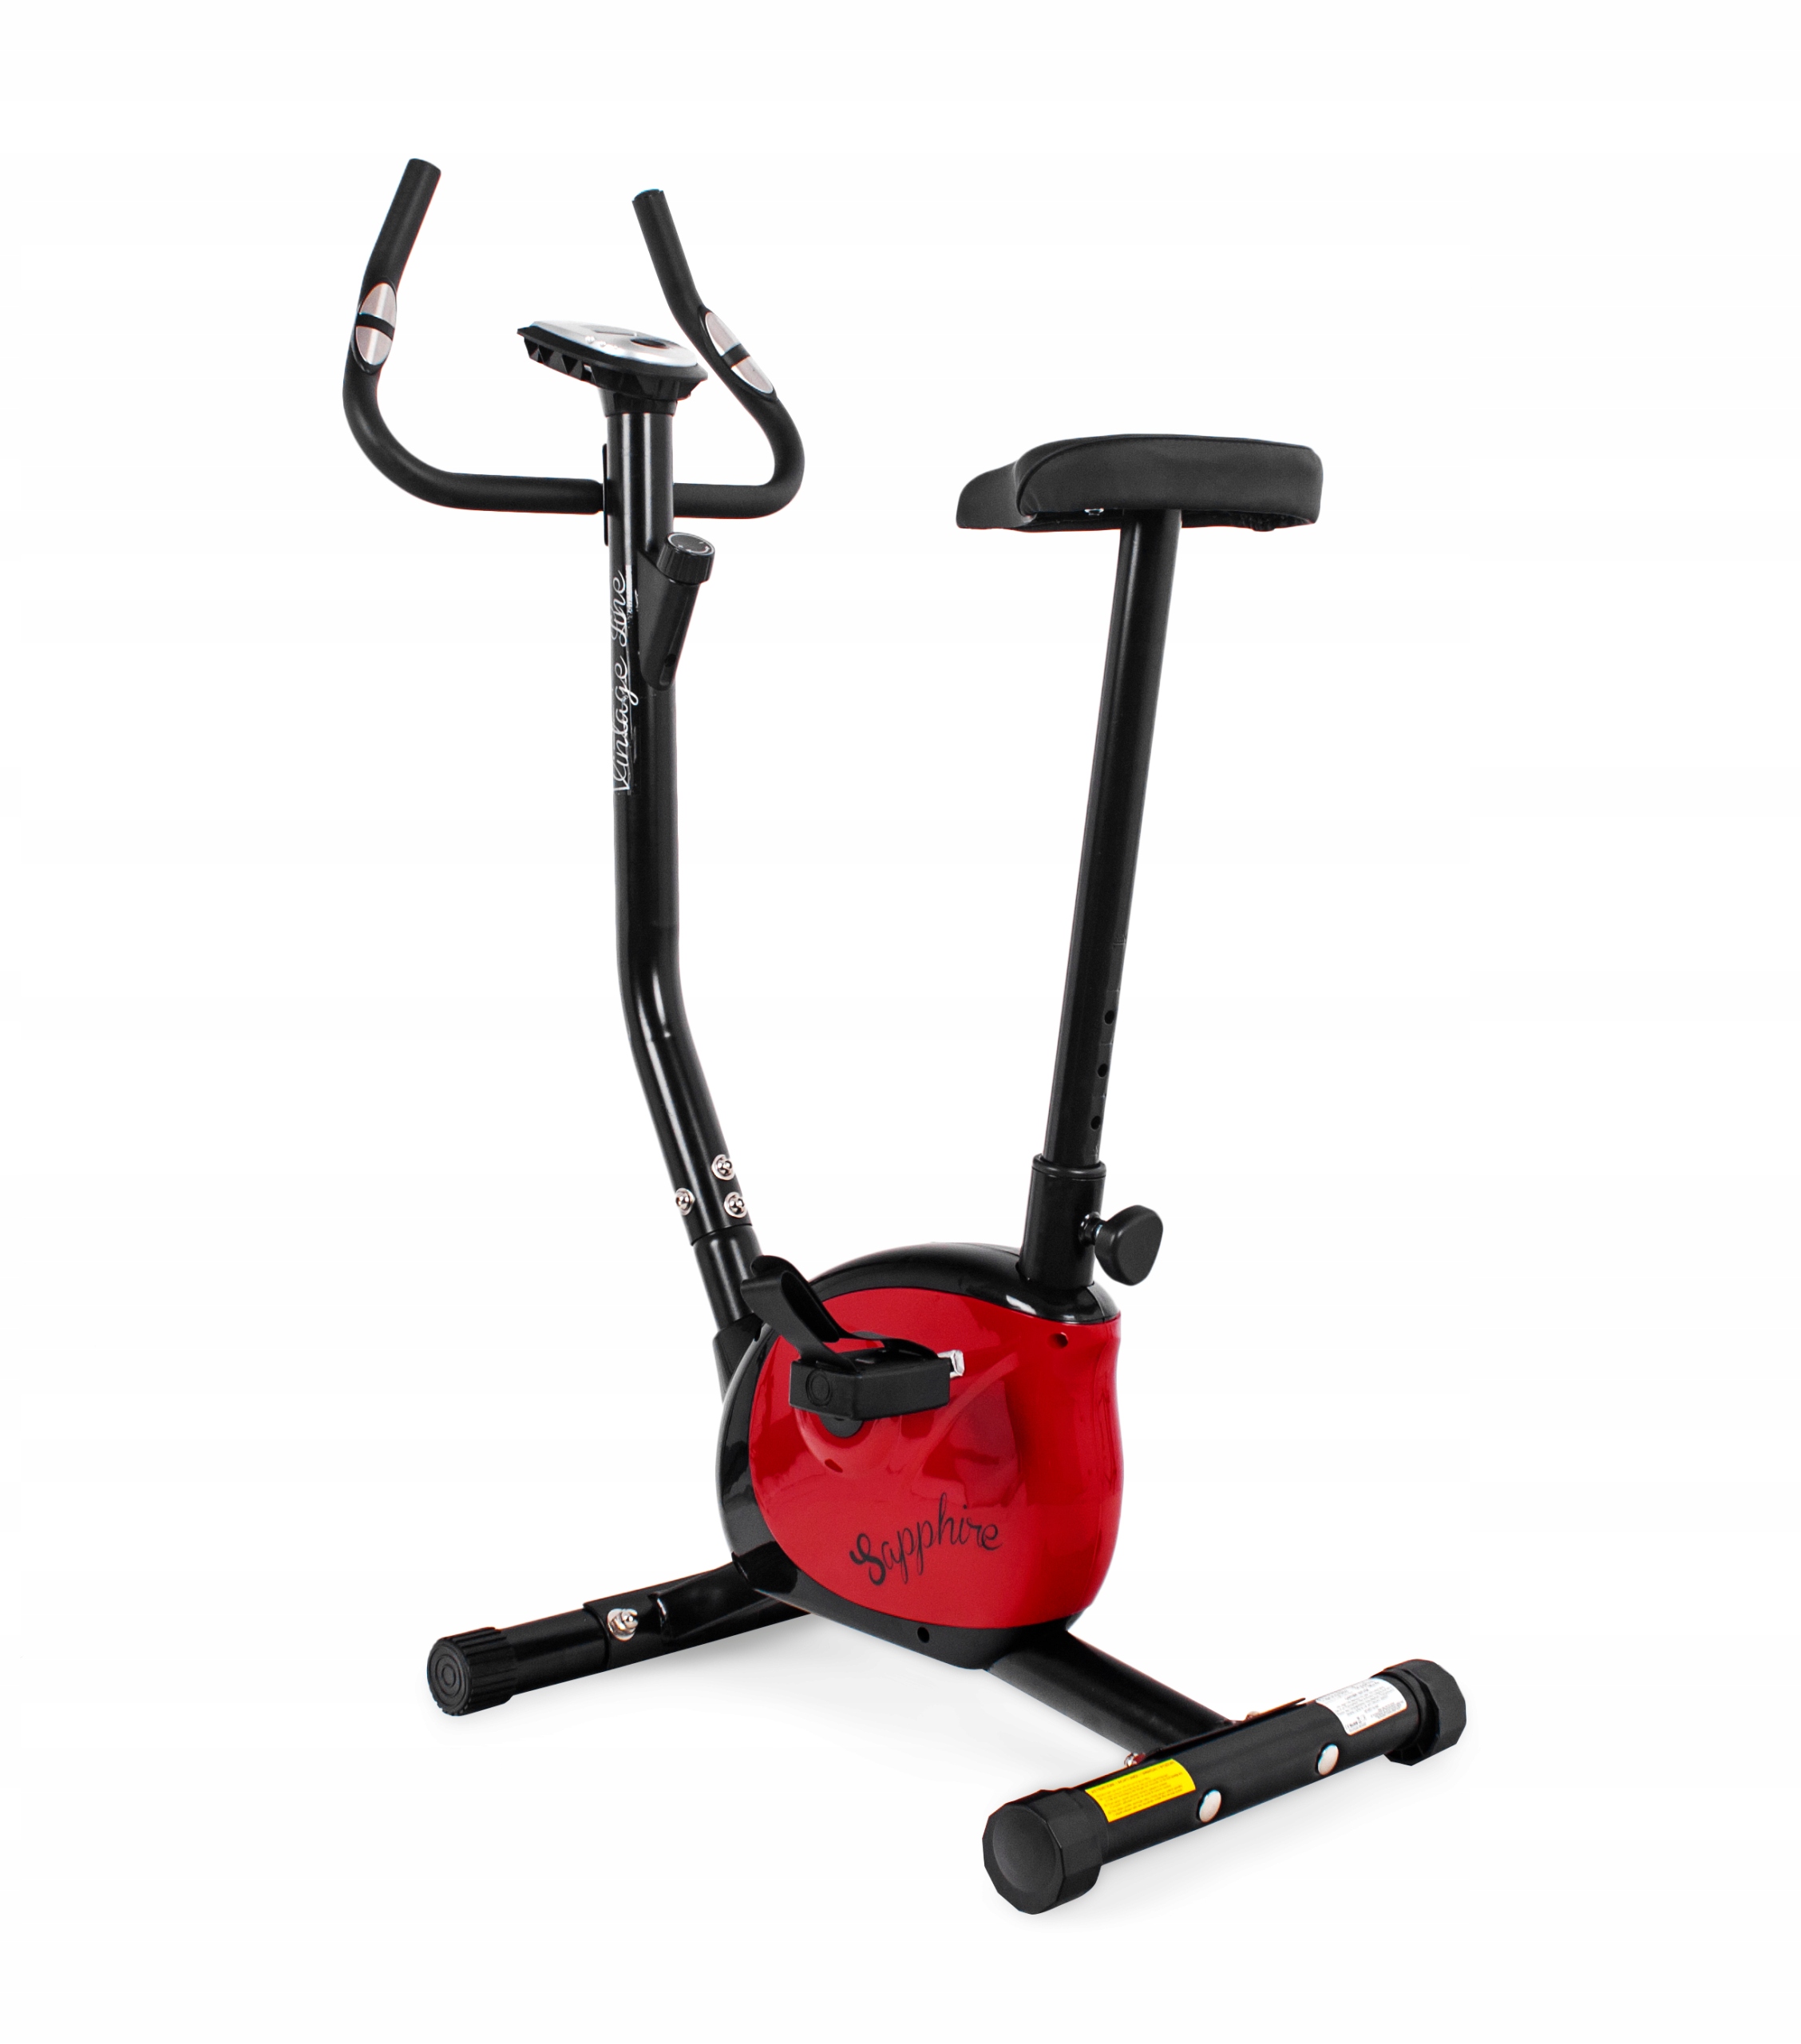 Rower treningowy VINTAGE czarno-czerwony z kategorii Rowery treningowe, marka Sapphire 